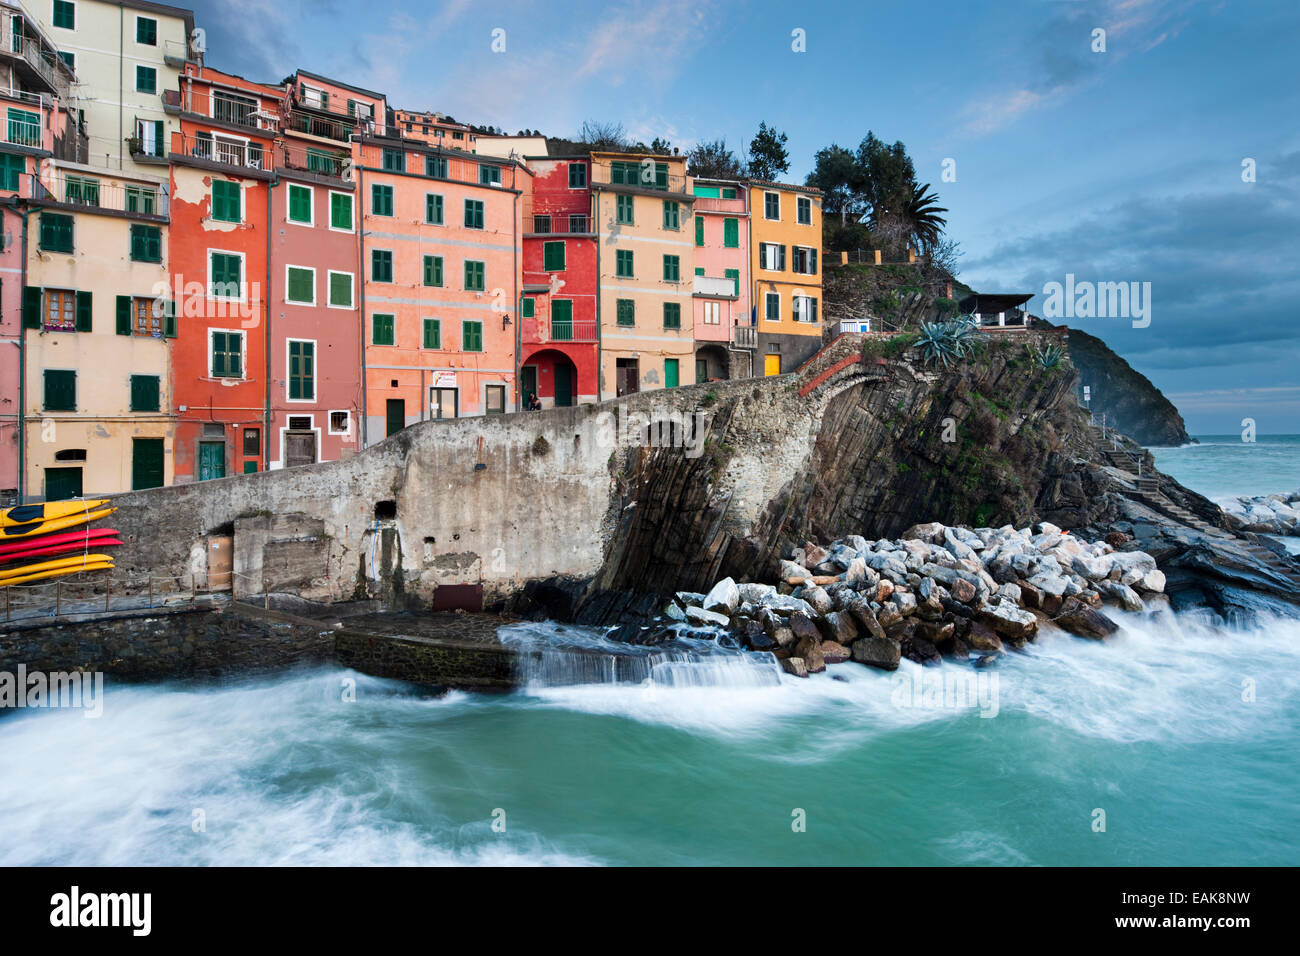 Case colorate sulla costa rocciosa, dichiarato patrimonio culturale mondiale dall'UNESCO, Riomaggiore Cinque Terre Liguria, Italia Foto Stock